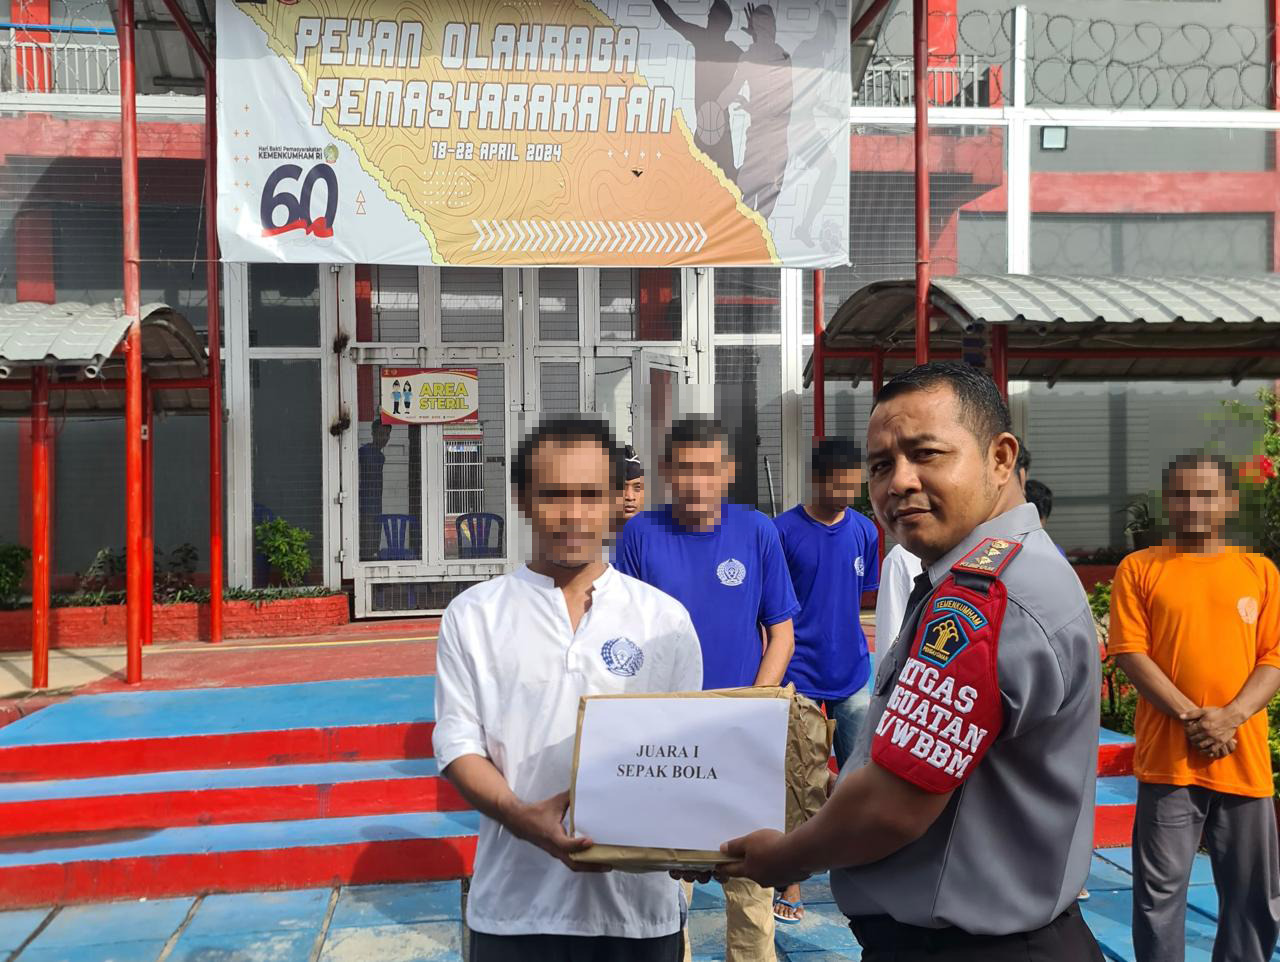 Lapas Banjarbaru Bagikan Hadiah bagi Pemenang Pertandingan Olahraga HBP Ke-60